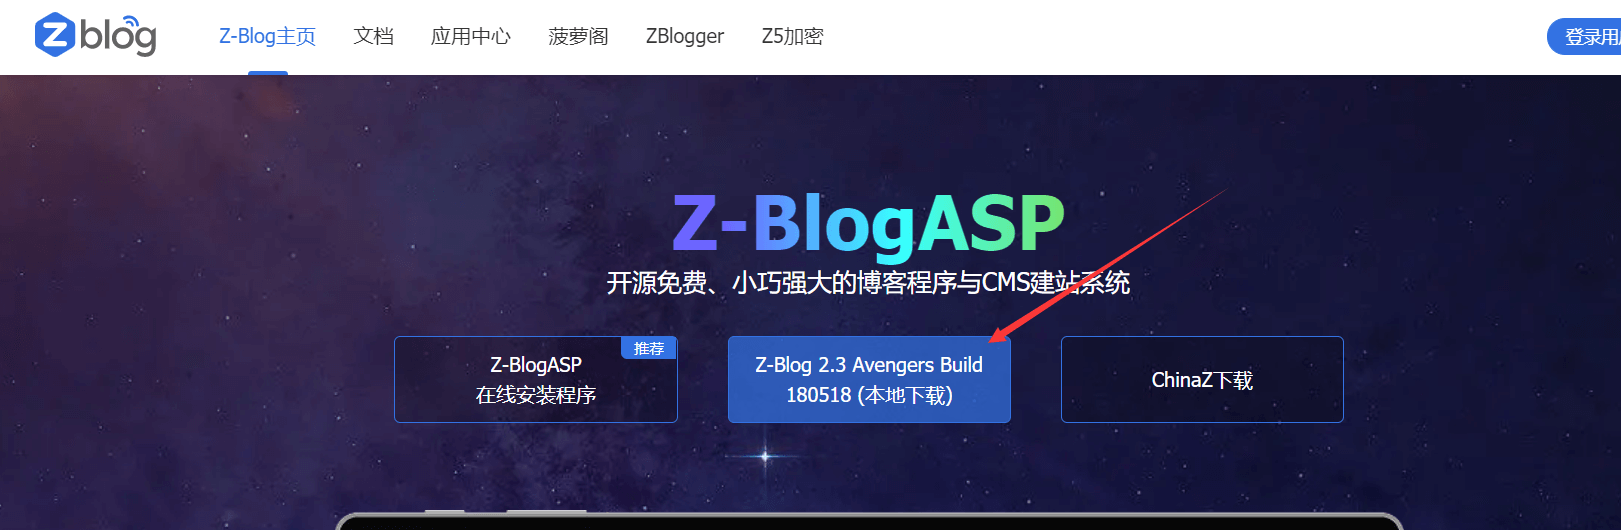 下载zblog网站程序